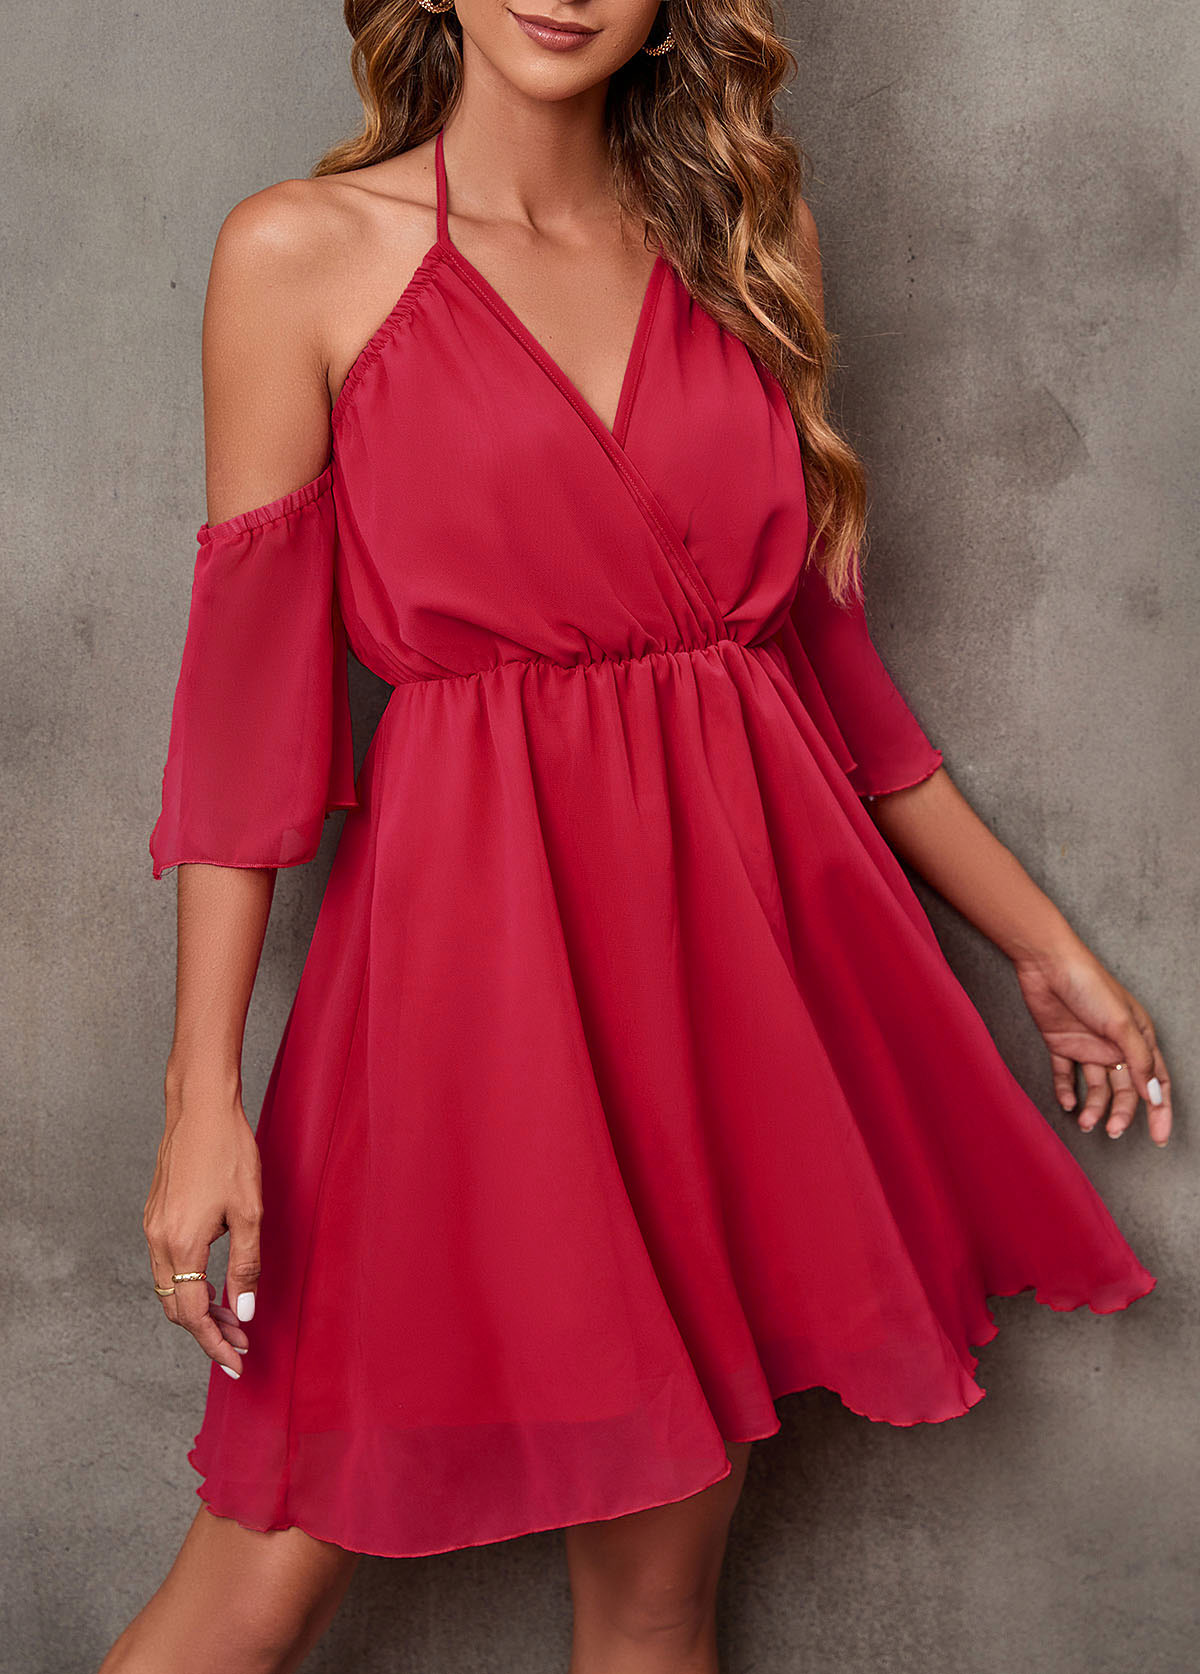 Cold Shoulder Halter Rose Red 3/4 Sleeve Dress